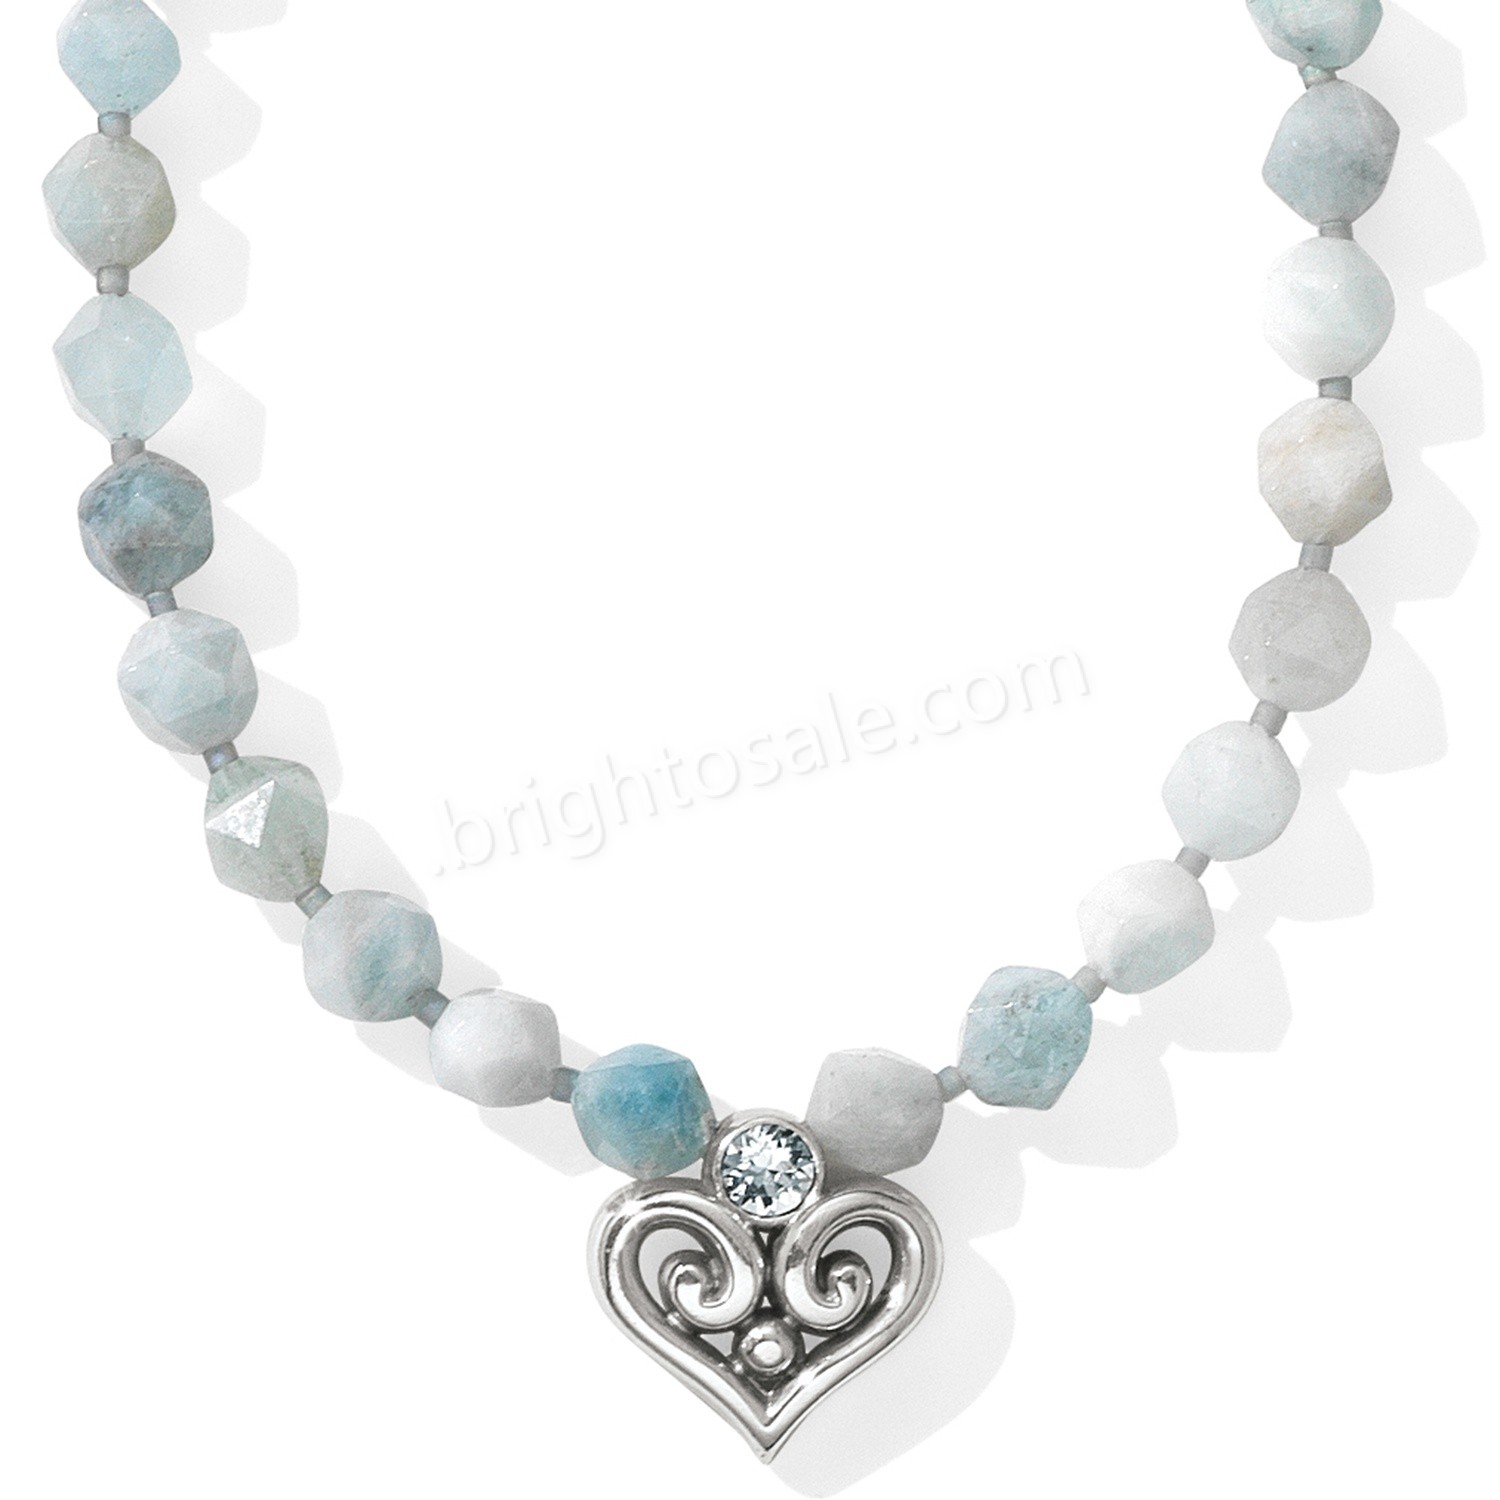 Brighton Collectibles & Online Discount Alcazar Heart Short Necklace - Brighton Collectibles & Online Discount Alcazar Heart Short Necklace